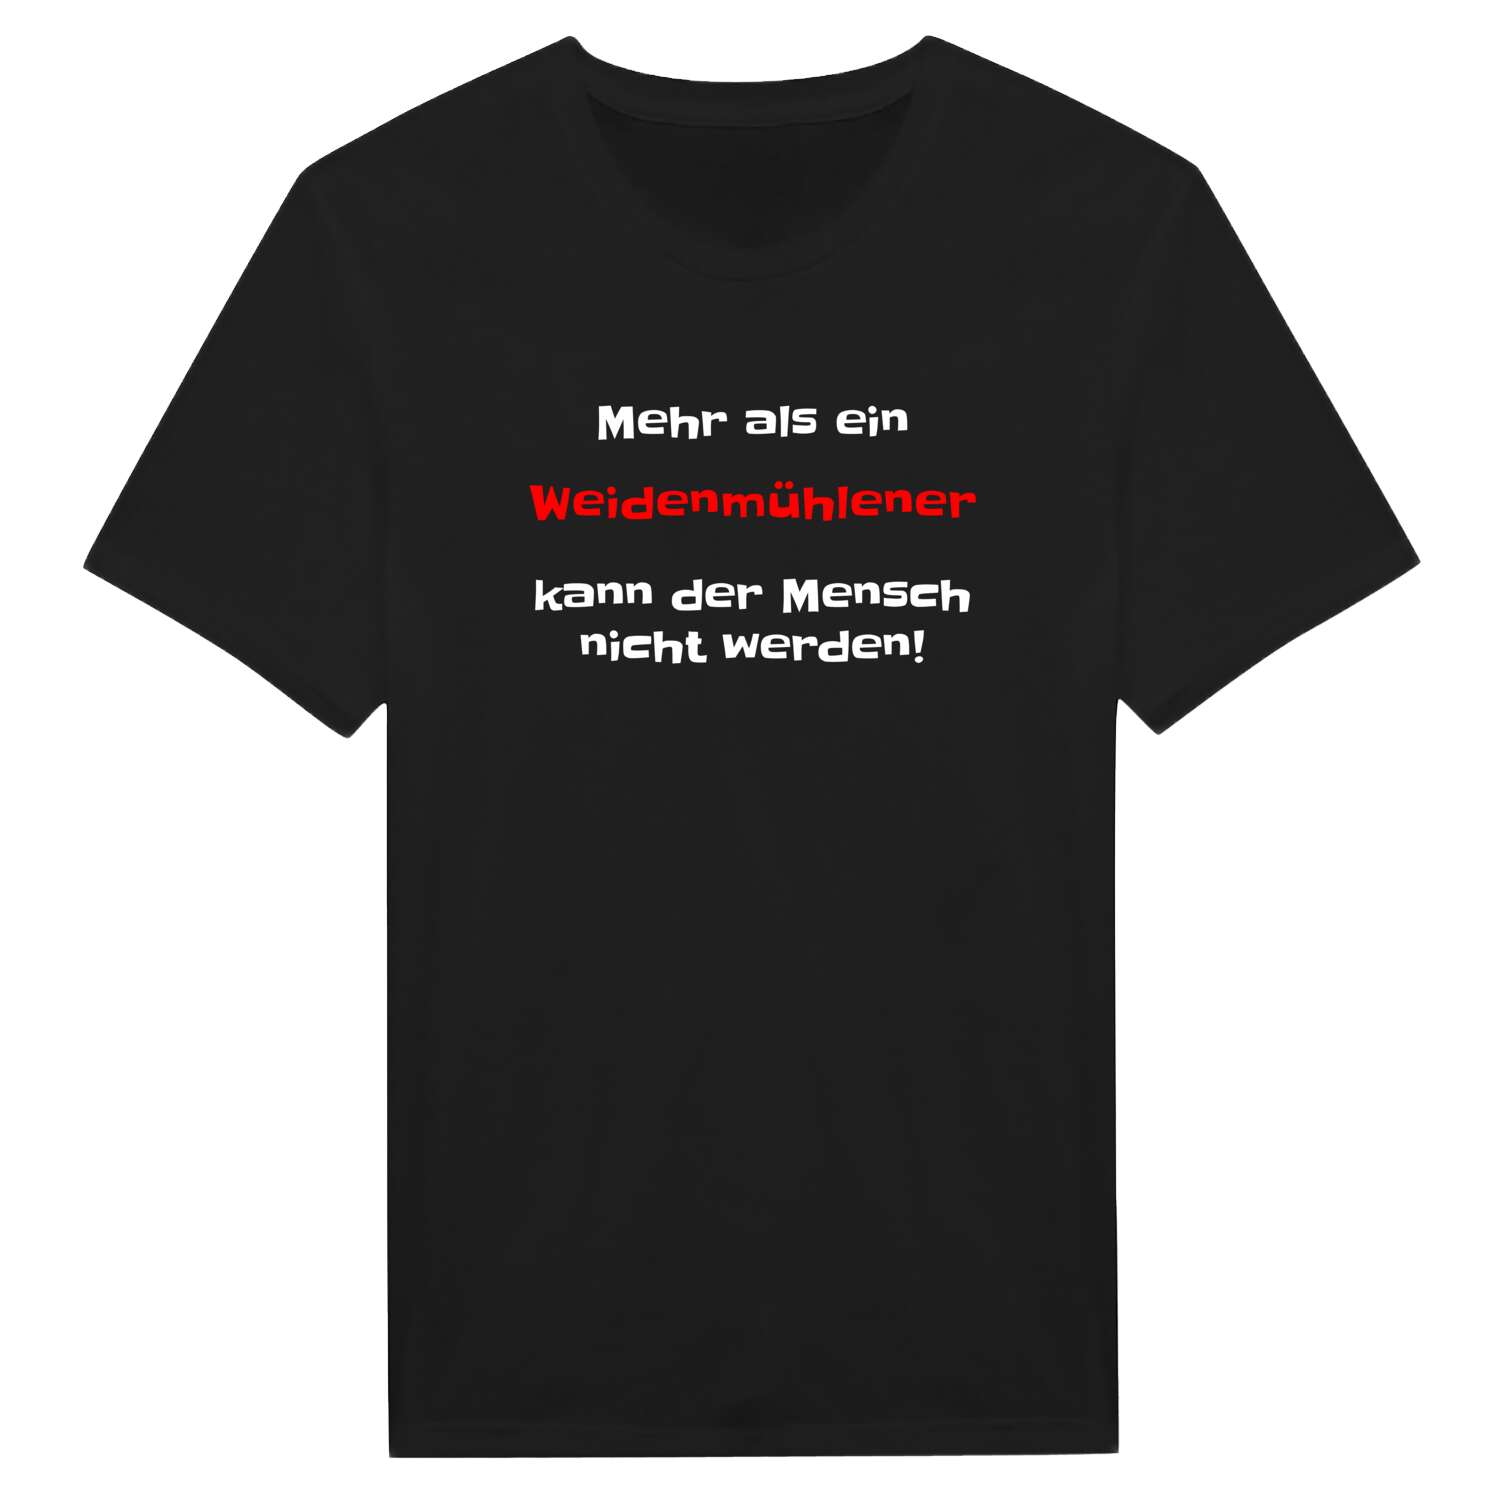 Weidenmühle T-Shirt »Mehr als ein«